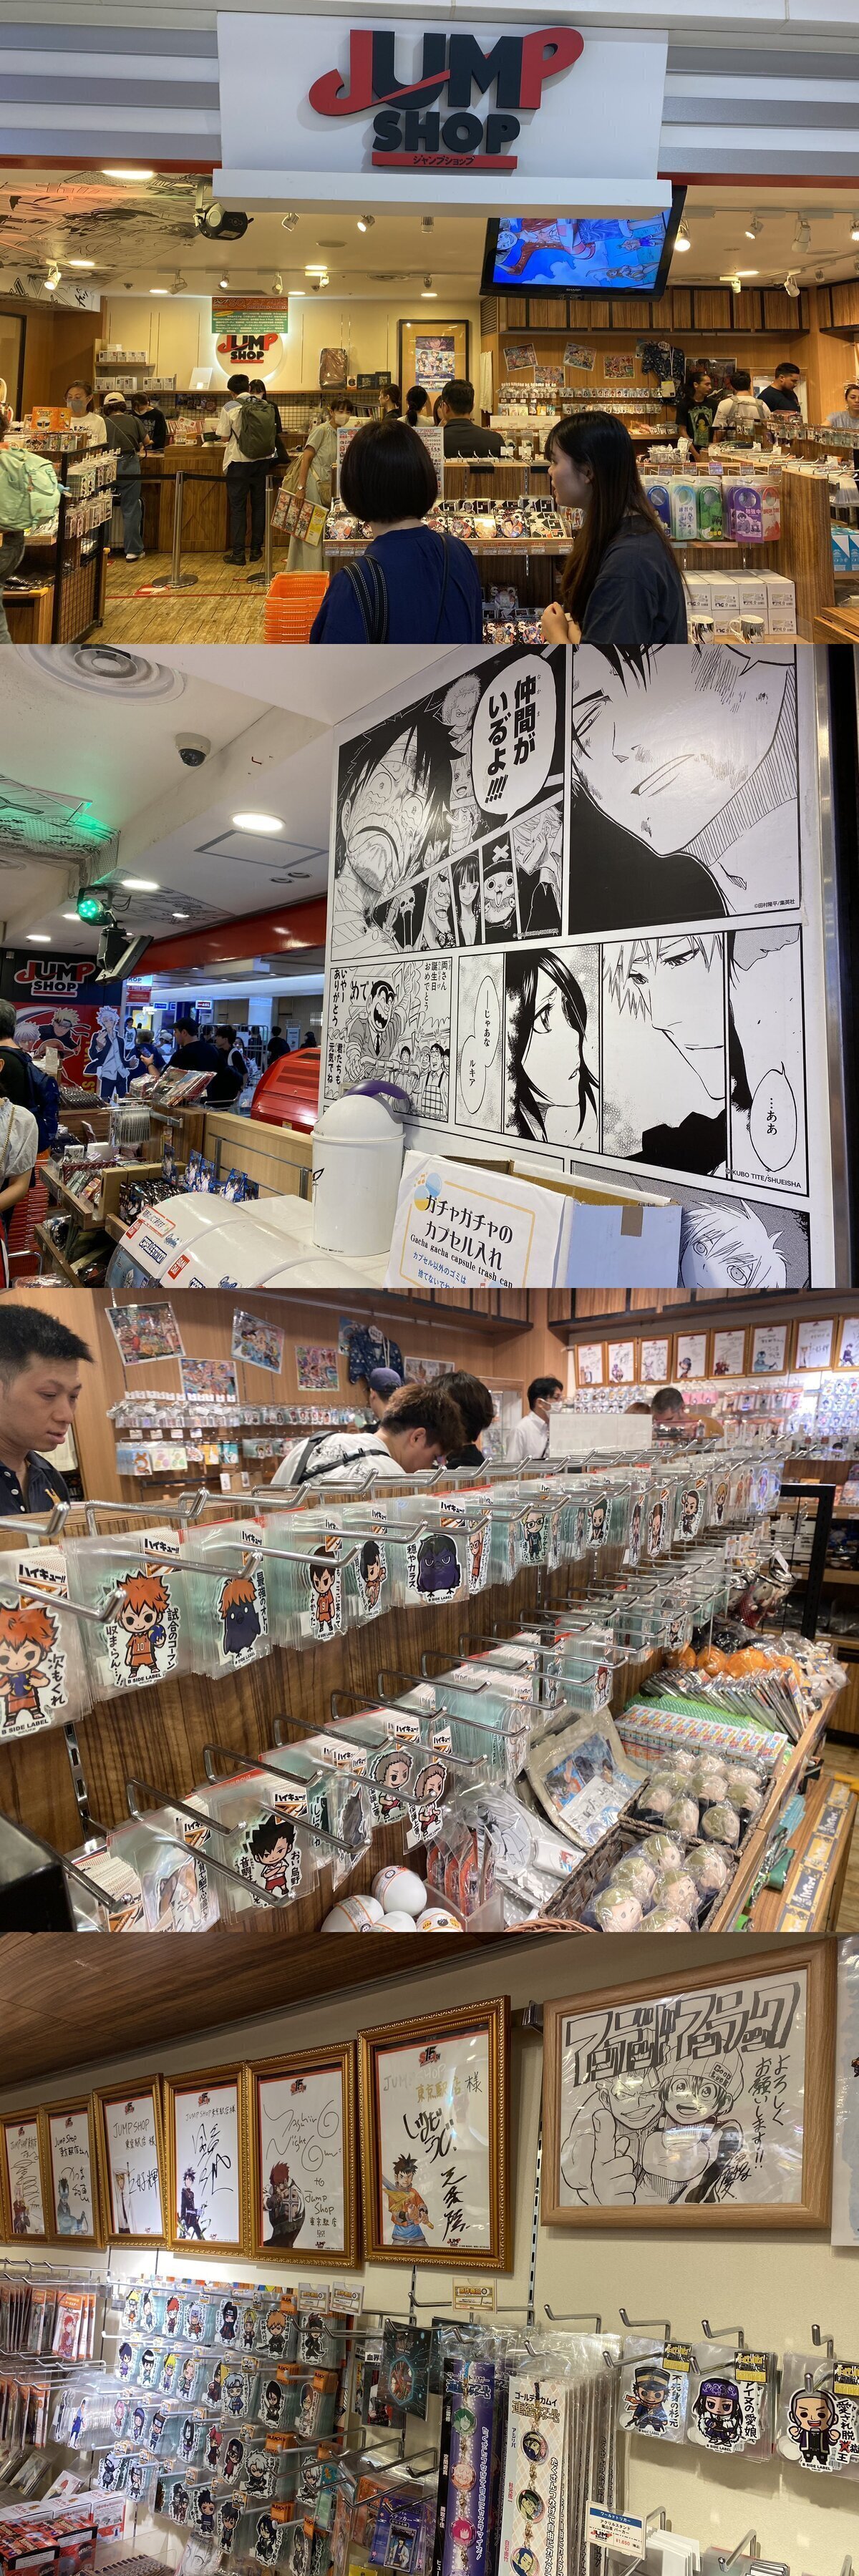 Fotitos de la Jump Shop, tienda de la Shonen Jump que se puede visitar en la Tokyô Character Street de la estación principal de Tokyô.Mucho merchandising de ‘Dragon Ball’, ‘My Hero Academia’, ‘Haikyû!!’, ‘One Piece’